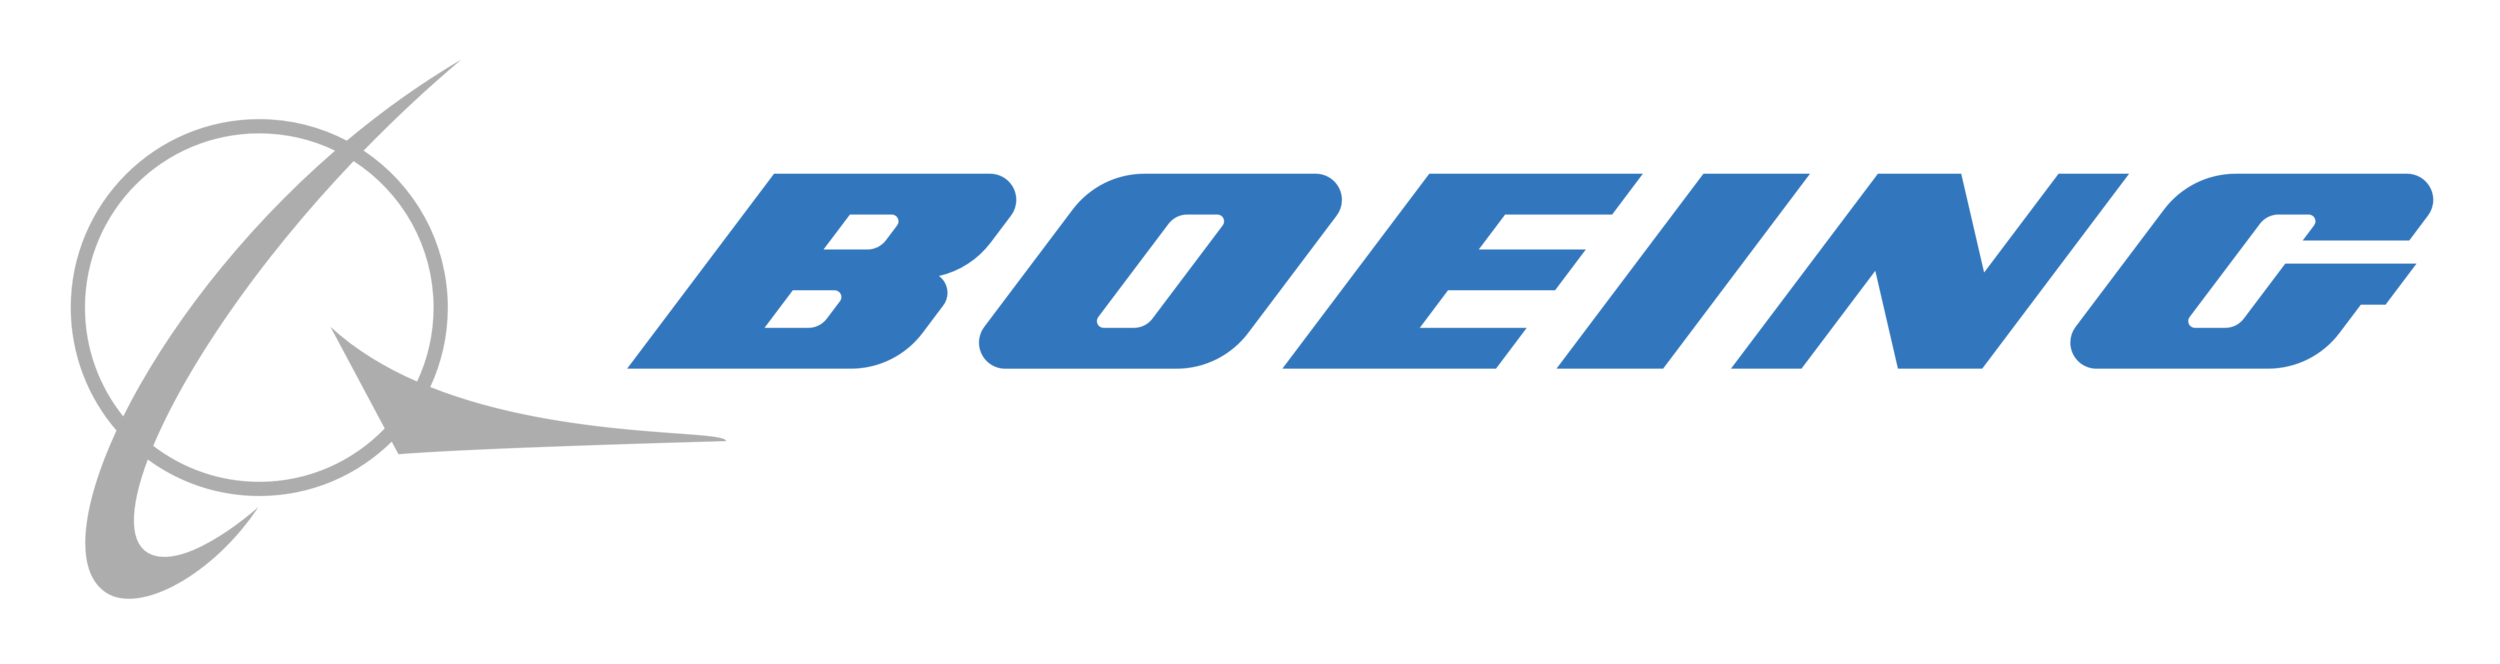 Boeing Logo (Copy) (Copy)